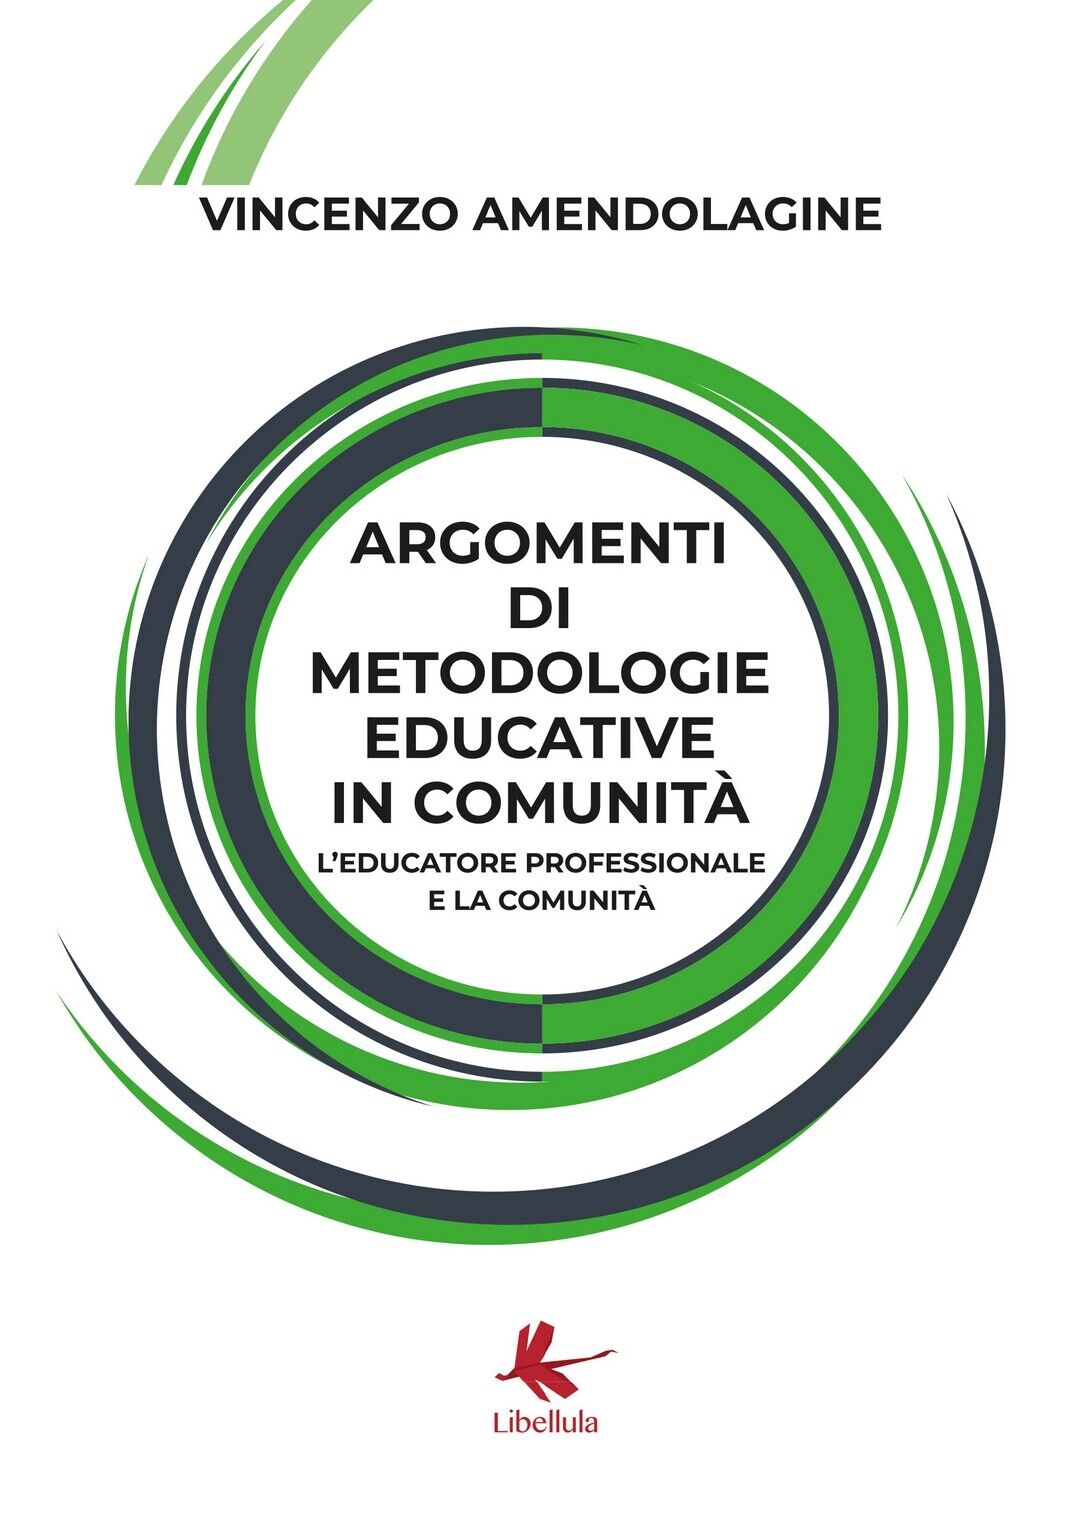 Argomenti di metodologie educative in comunit?. L'educatore professionale